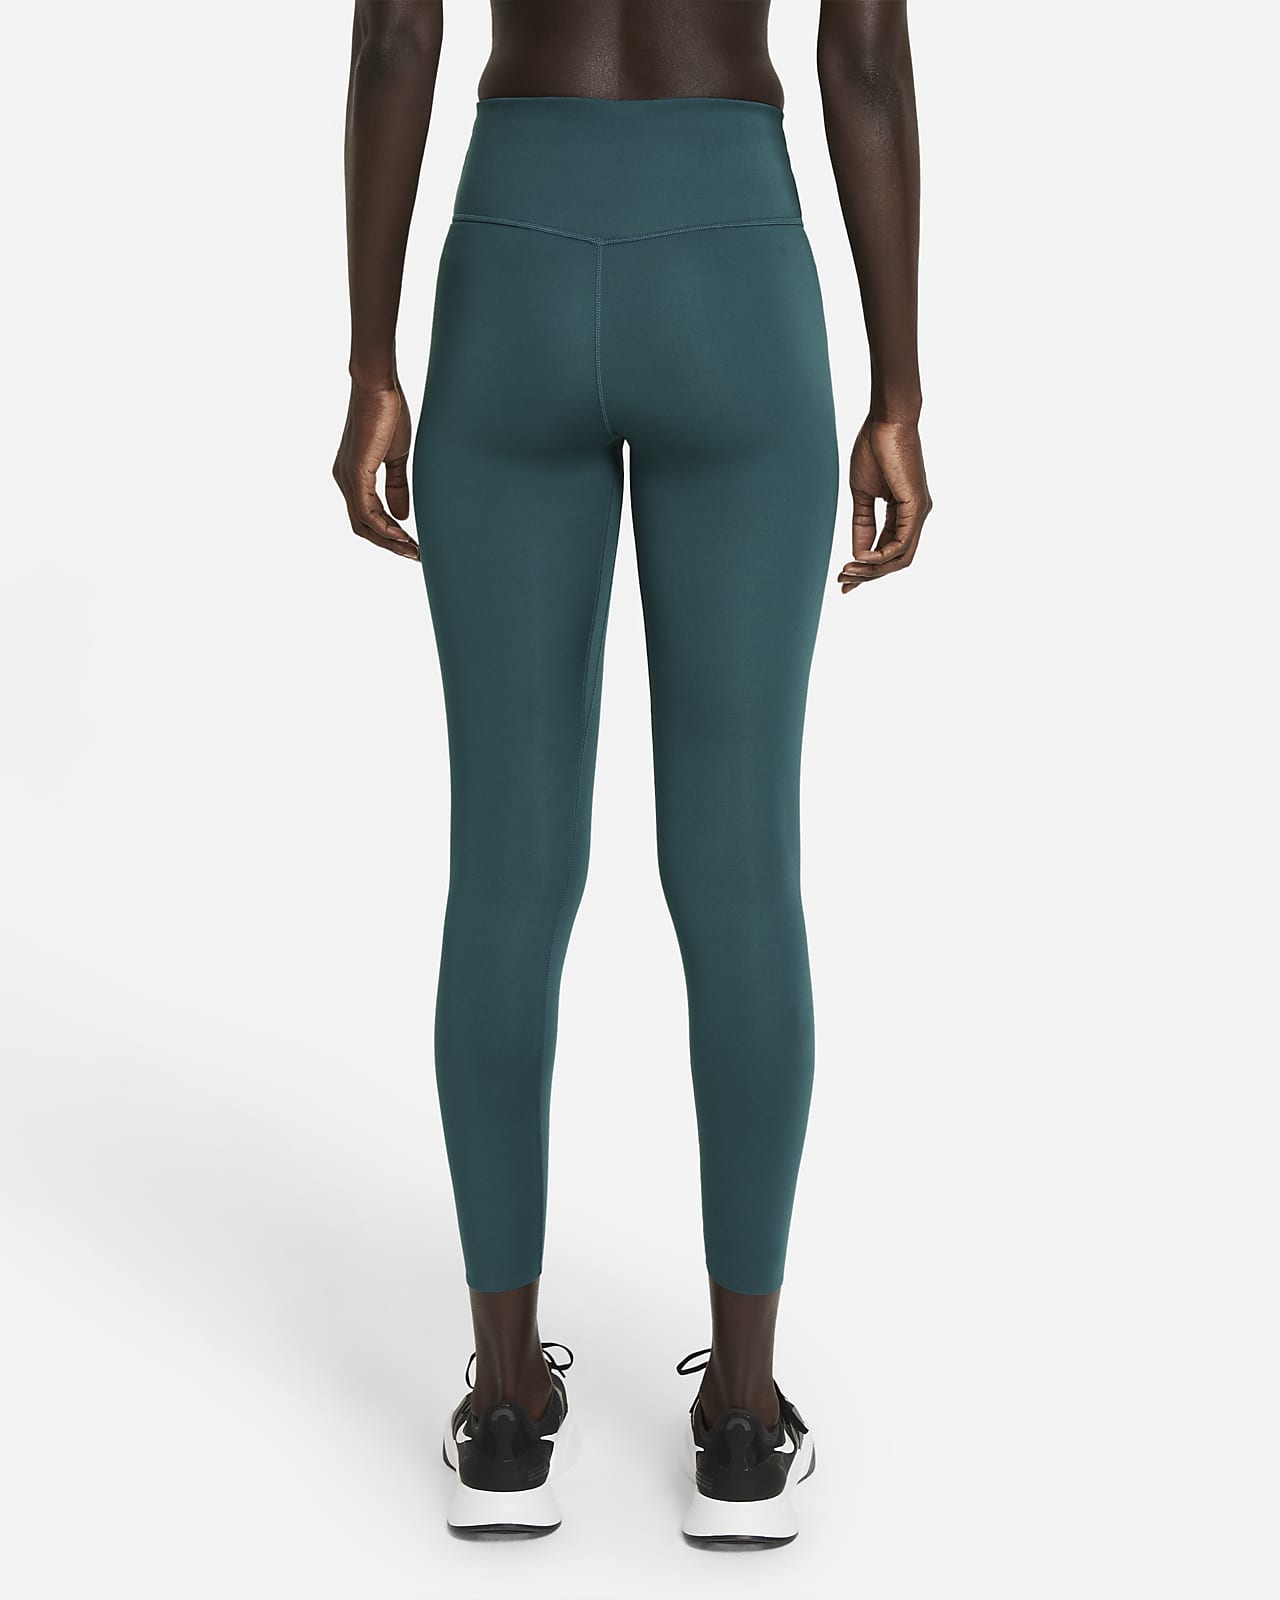 lululemon - Lululemon Dark Green Leggings 7/8 Length on Designer Wardrobe